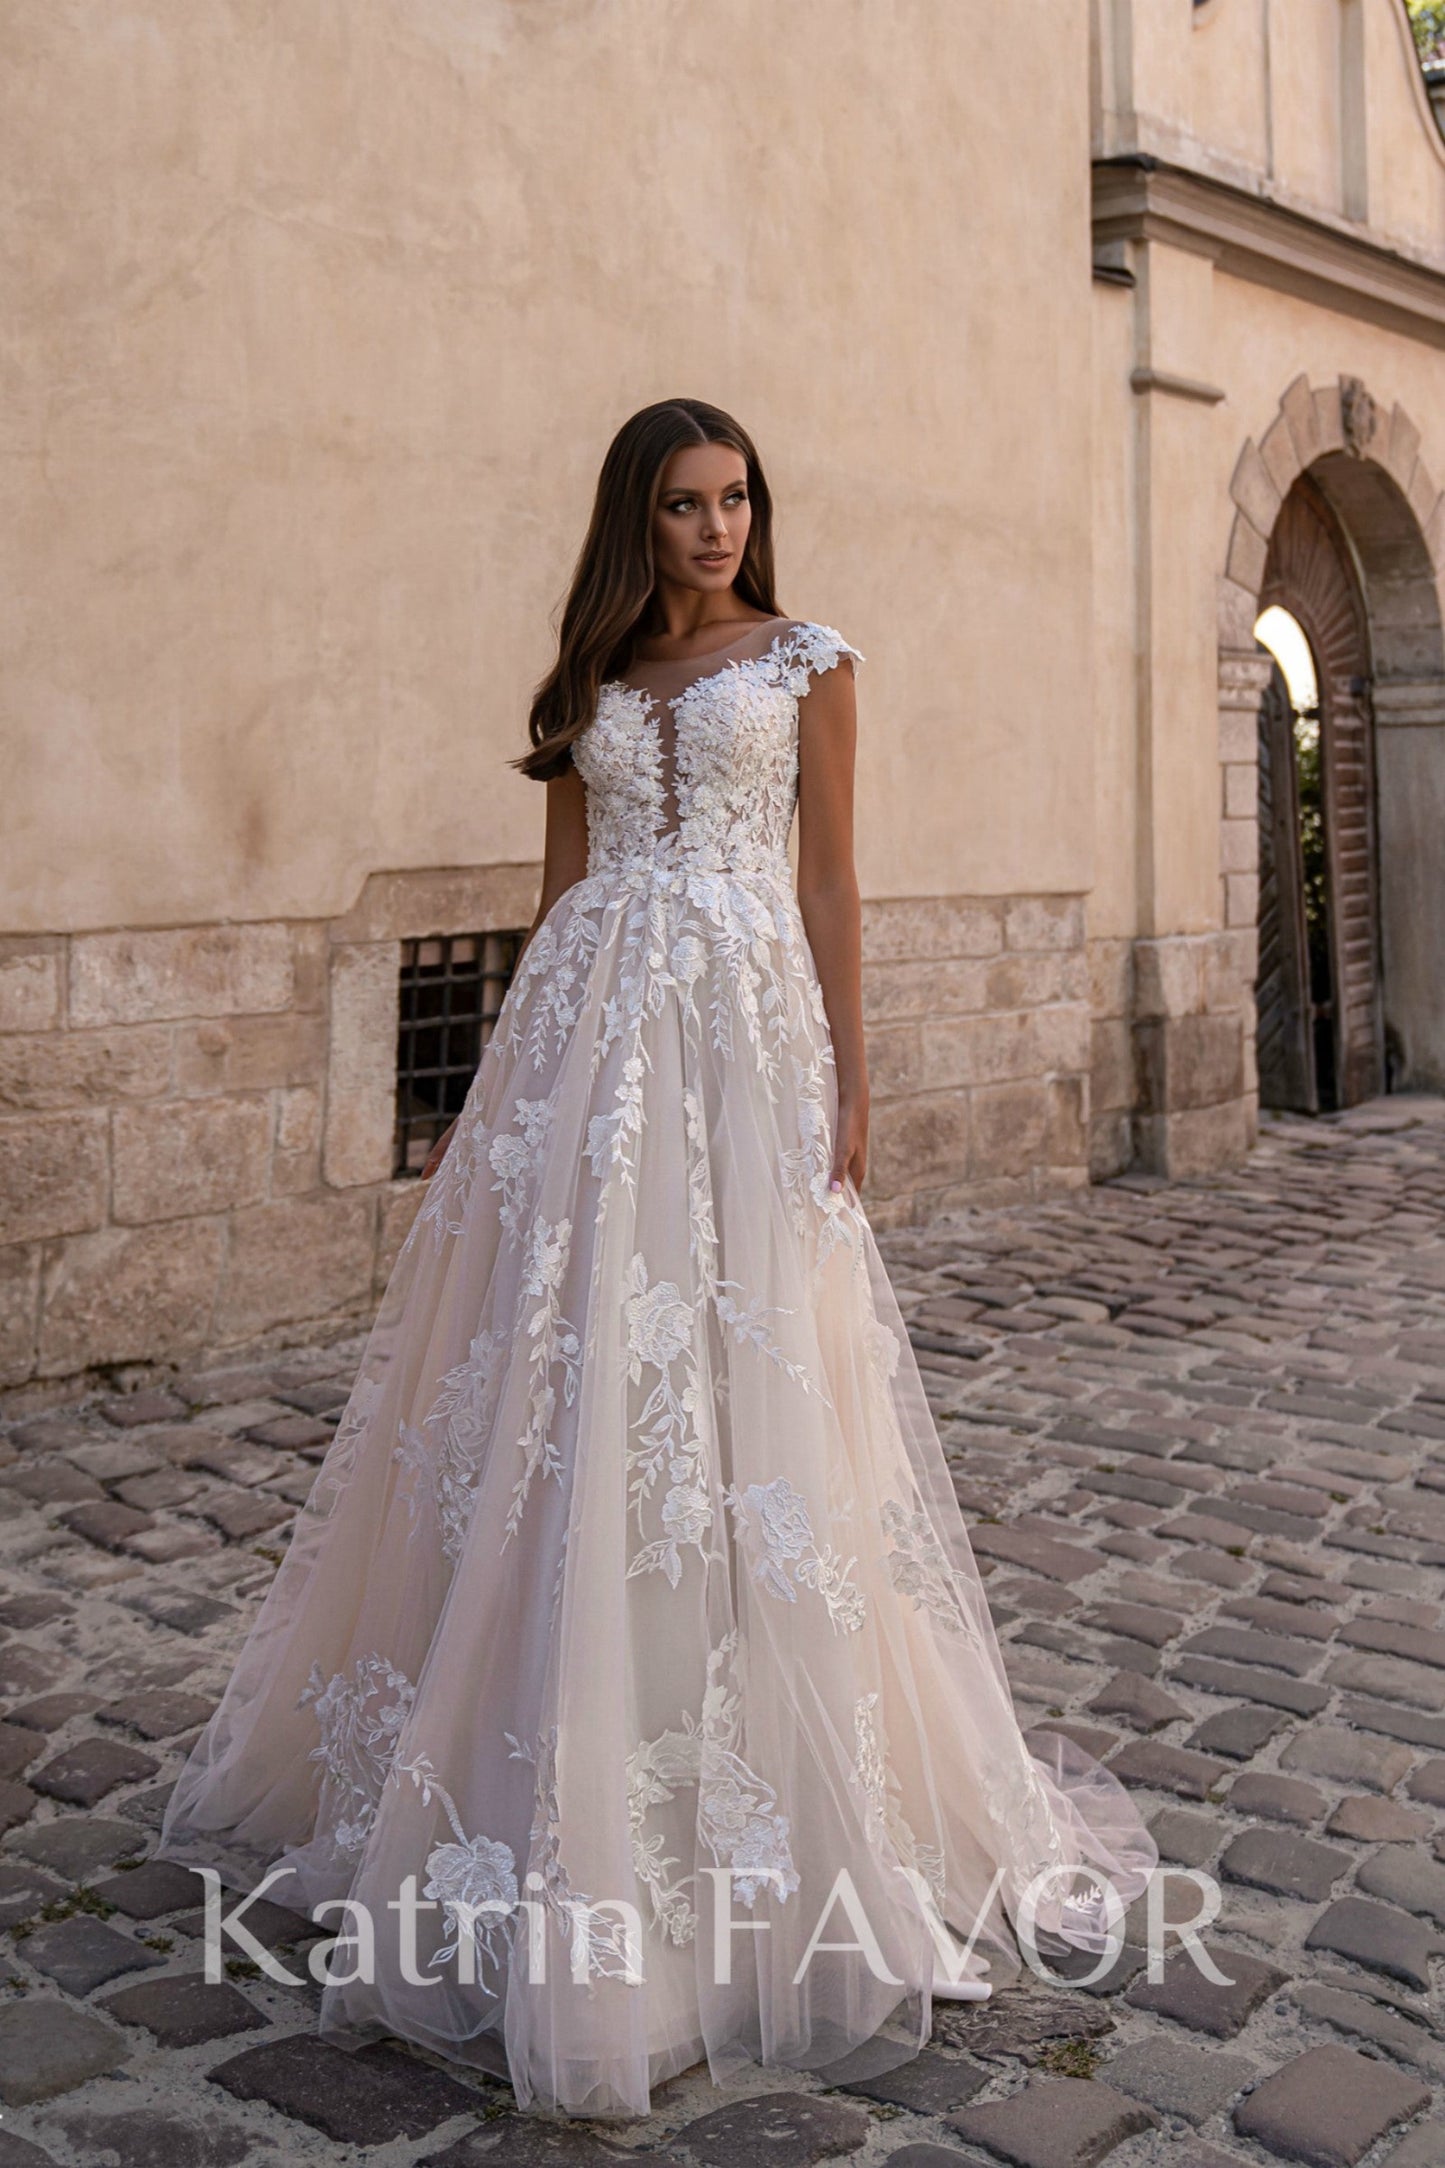 KatrinFAVORboutique-Floral tulle rustic wedding dress